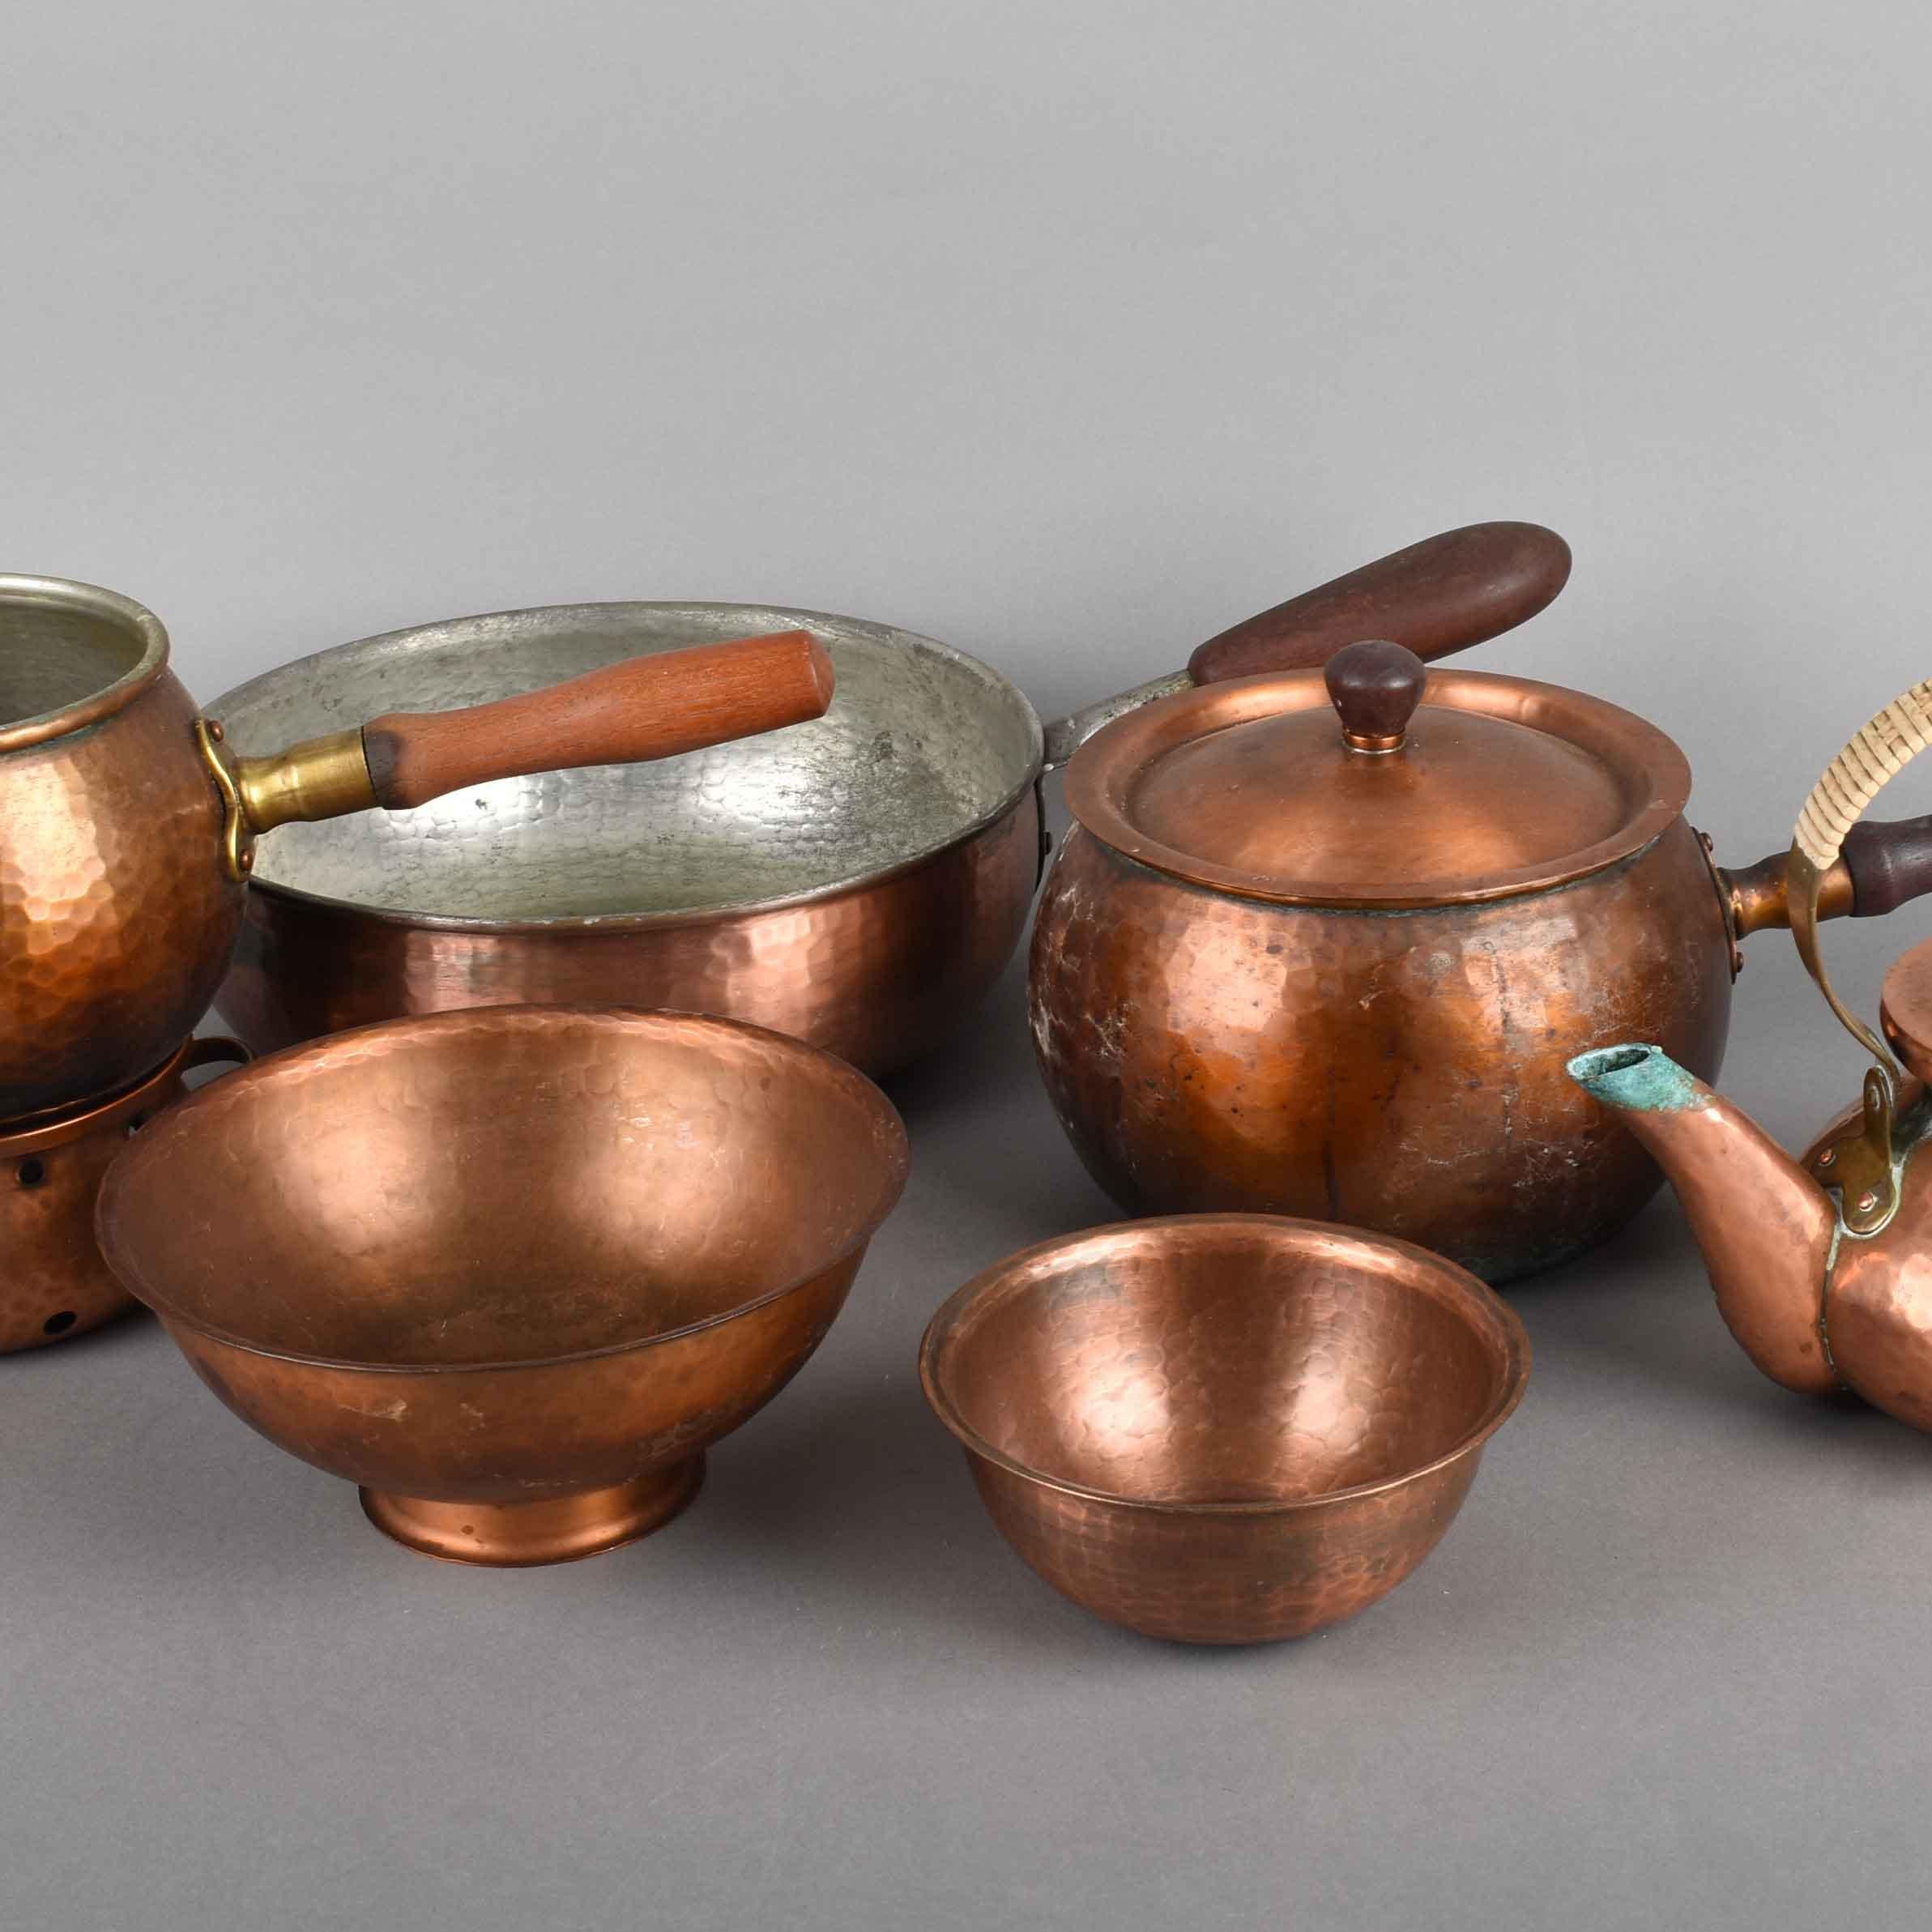 Das Kupferset von Eugen Zint ist eine originelle dekorative Gruppe von Objekten aus den 1950er Jahren.

Original-Kupfer. Die Gruppe umfasst sieben Stücke: zwei Schüsseln in verschiedenen Größen, drei Töpfe, eine Teekanne und einen